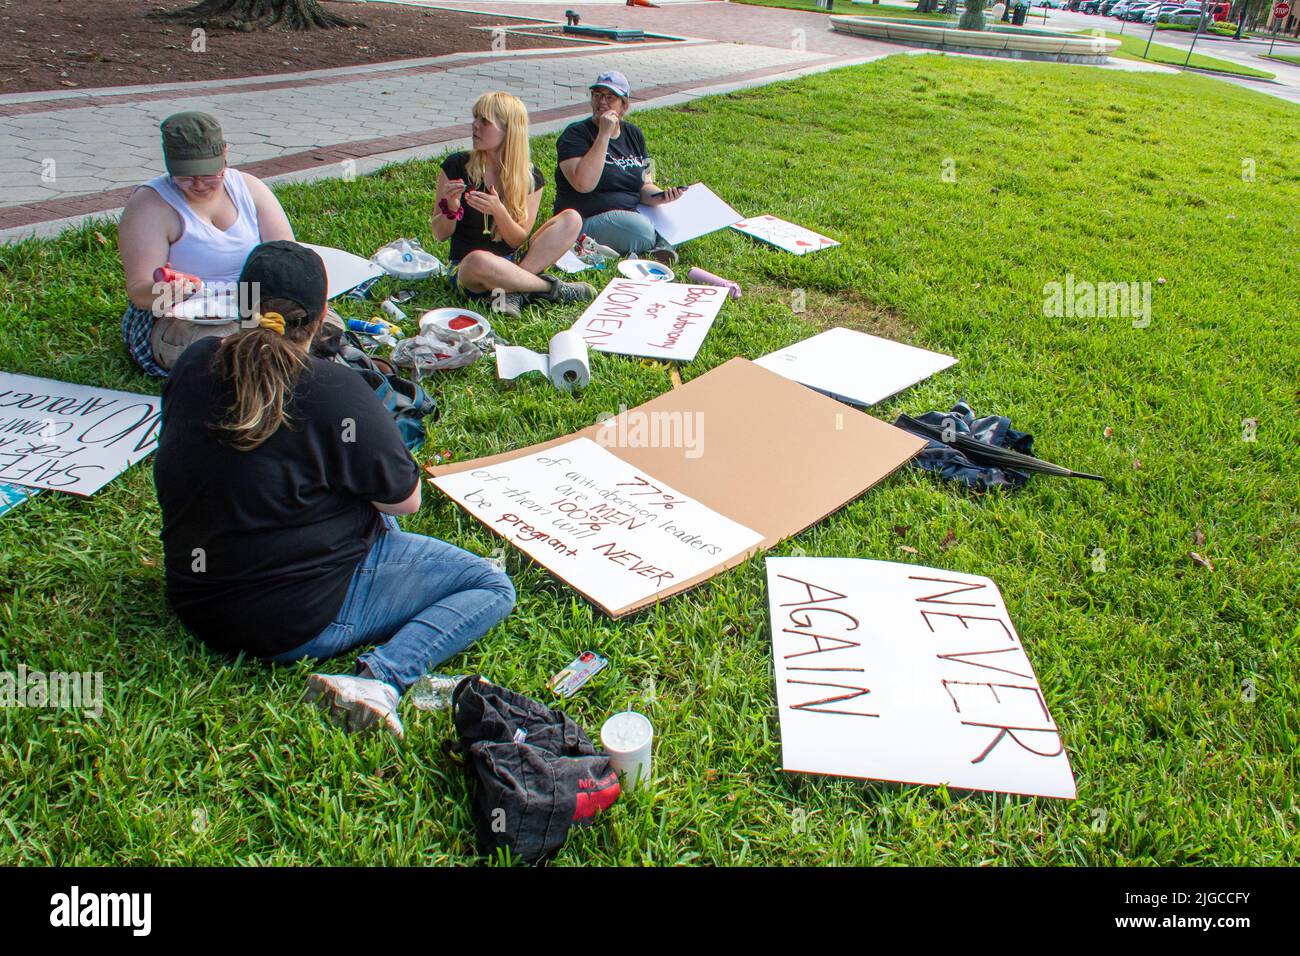 Junge Pro-Abtreibungsaktivisten bereiten ihre Plakate für den demonstrationsmarsch gegen die in vielen Staaten verhängten Beschränkungen vor. Stockfoto